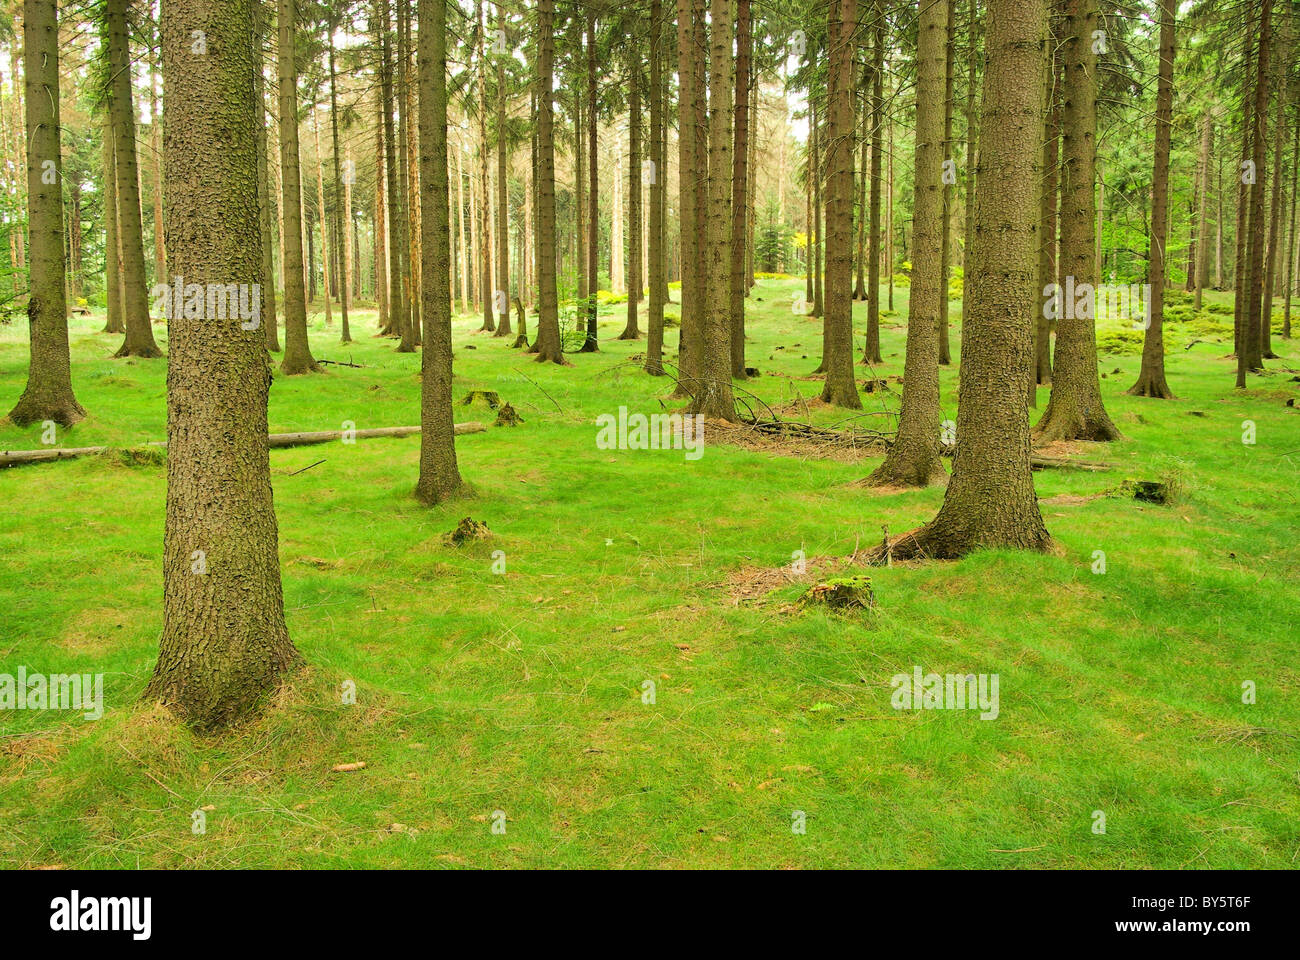 Fichtenwald - foreste di abete rosso 04 Foto Stock